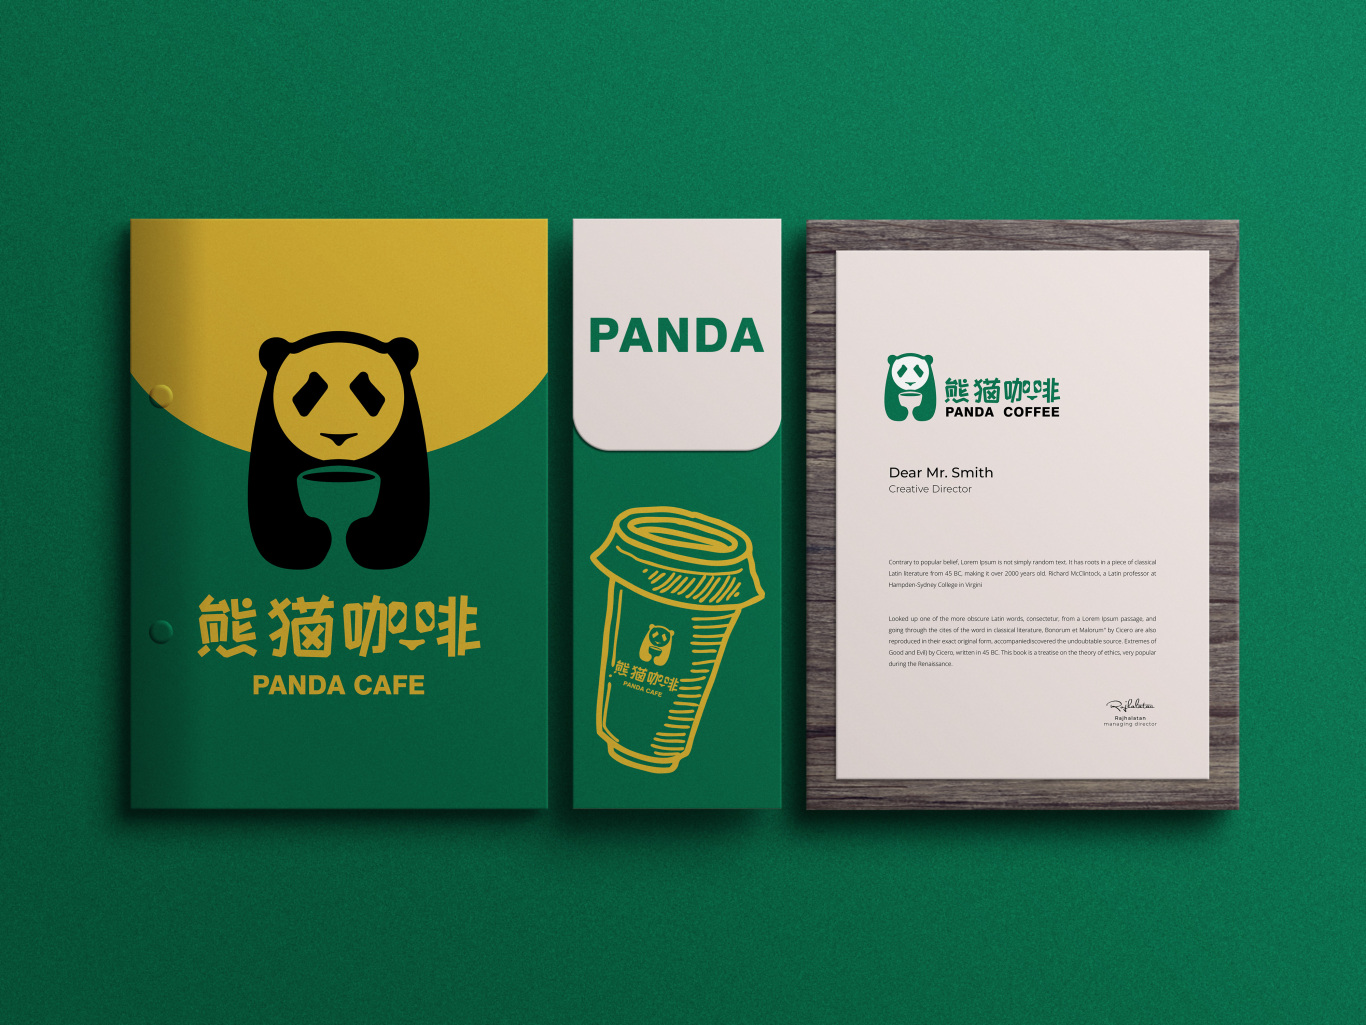 熊貓咖啡圖14